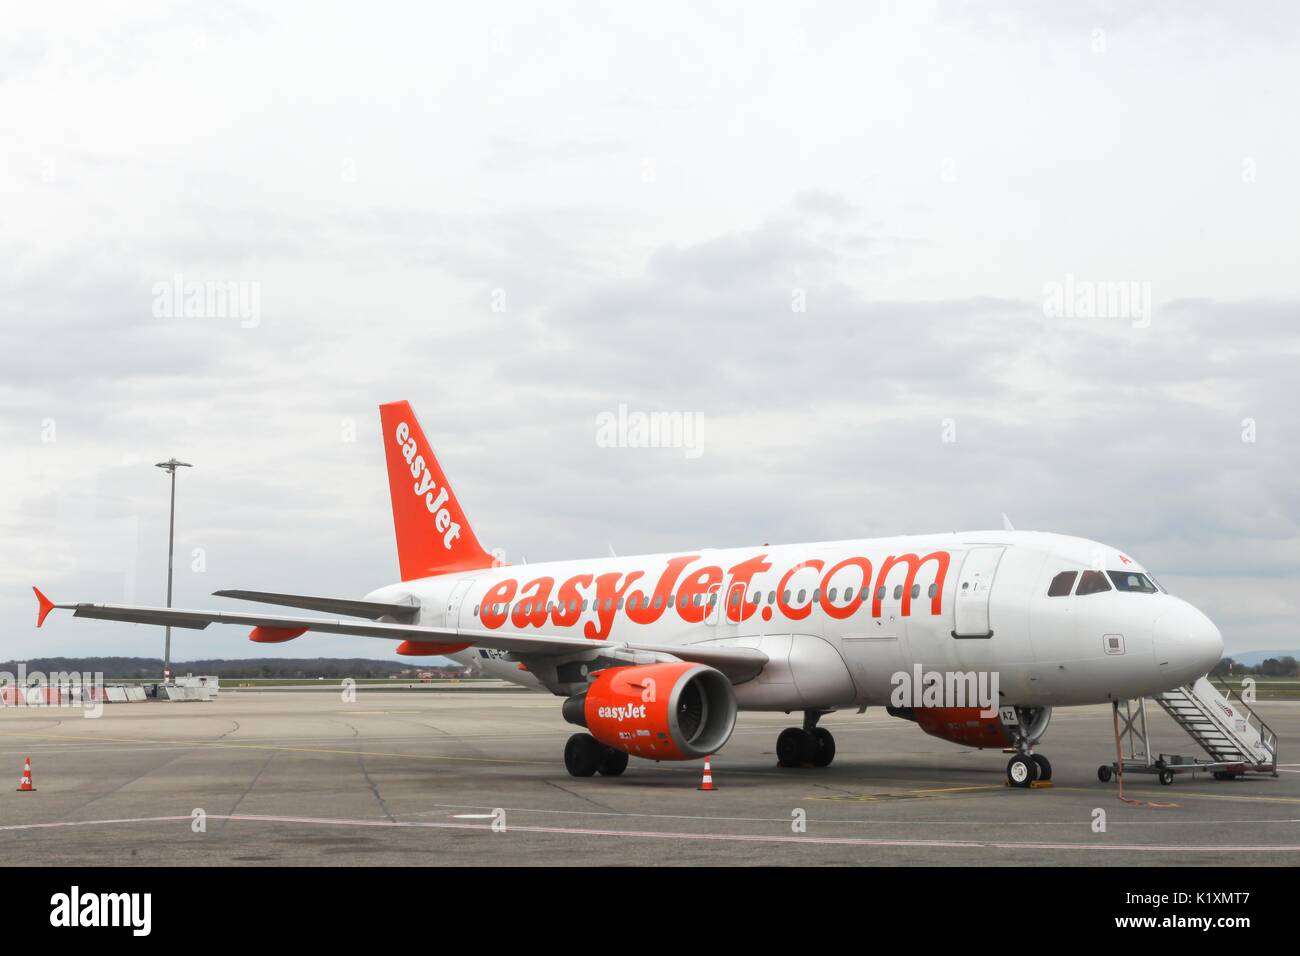 Lyon, Frankreich - 21. März 2017: Easyjet ist eine britische Fluggesellschaft unter dem Low-Cost-Carrier-Modell, basierend auf dem Flughafen London Luton Stockfoto